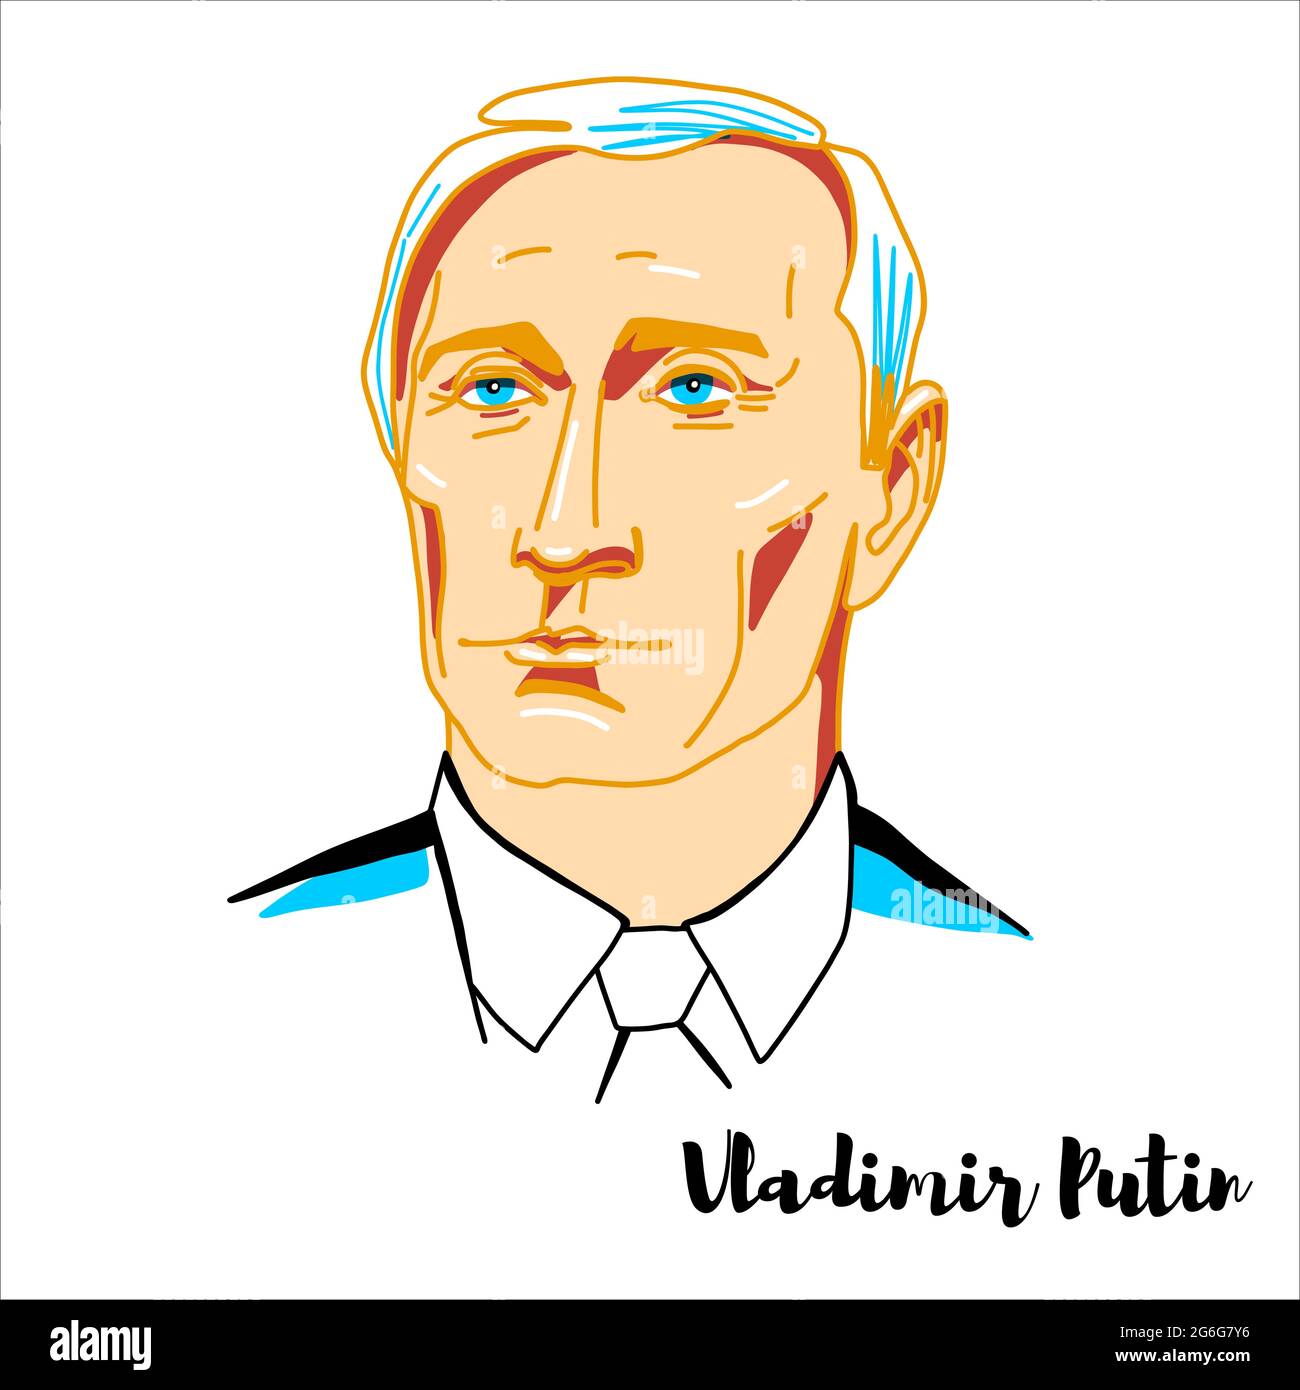 RUSSLAND, MOSKAU - 14. April 2019: Vladimir Putin graviert Vektorportrait mit Tintenkonturen. Russischer Politiker und ehemaliger Geheimdienstoffizier Stock Vektor